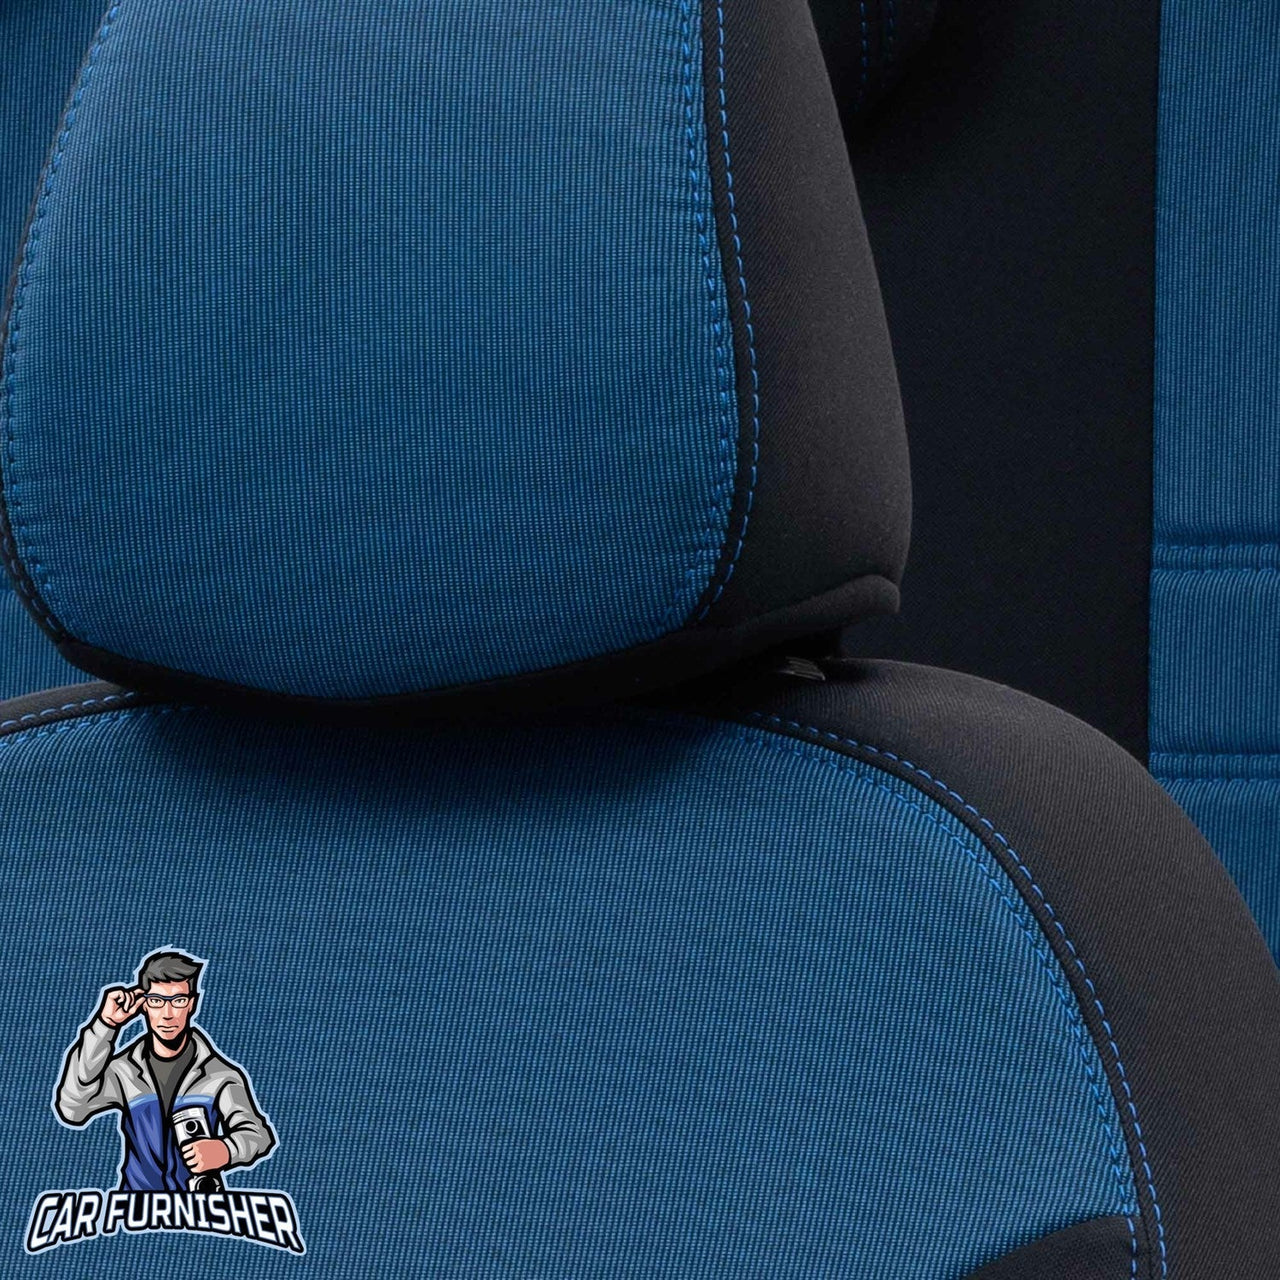 Skoda Citigo Seat Covers Original Jacquard Design Blue Jacquard Fabric